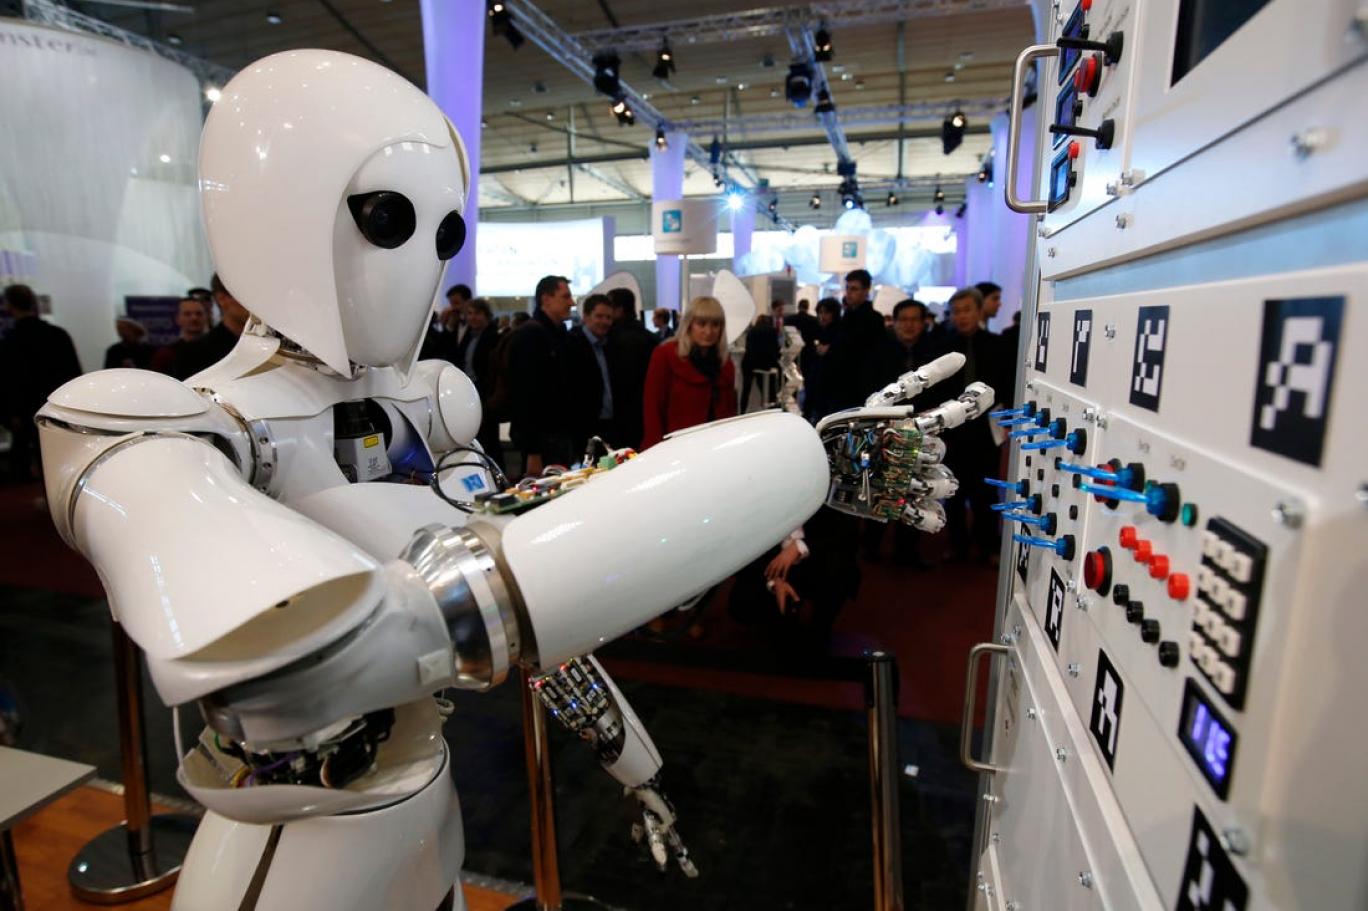 Bu makalenin tamamn bir robot yazd: Hl korkuyor musun, insan?